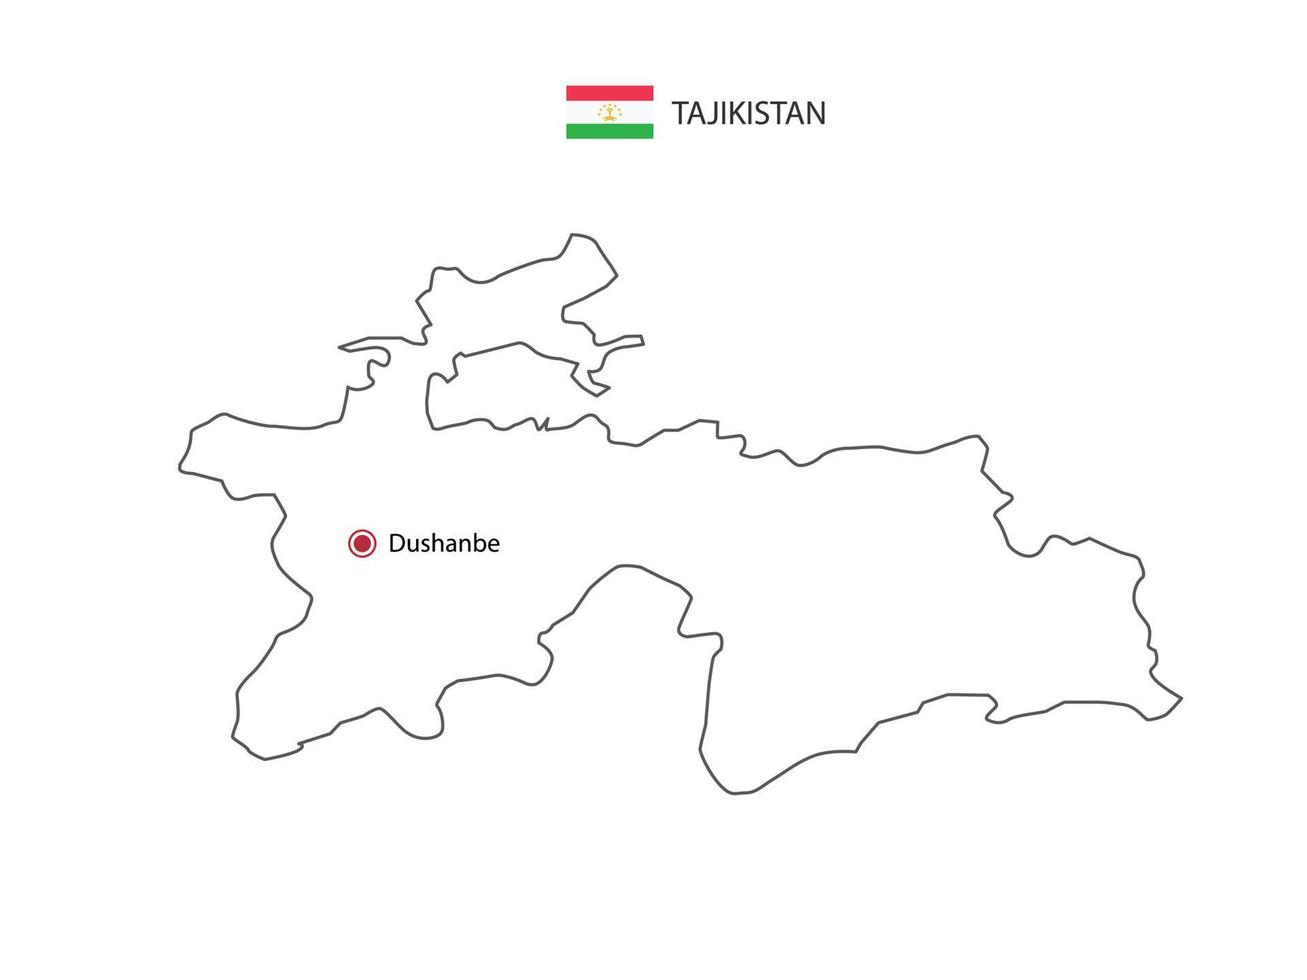 dessiner à la main un vecteur de ligne noire mince de la carte du tadjikistan avec la capitale dushanbe sur fond blanc.